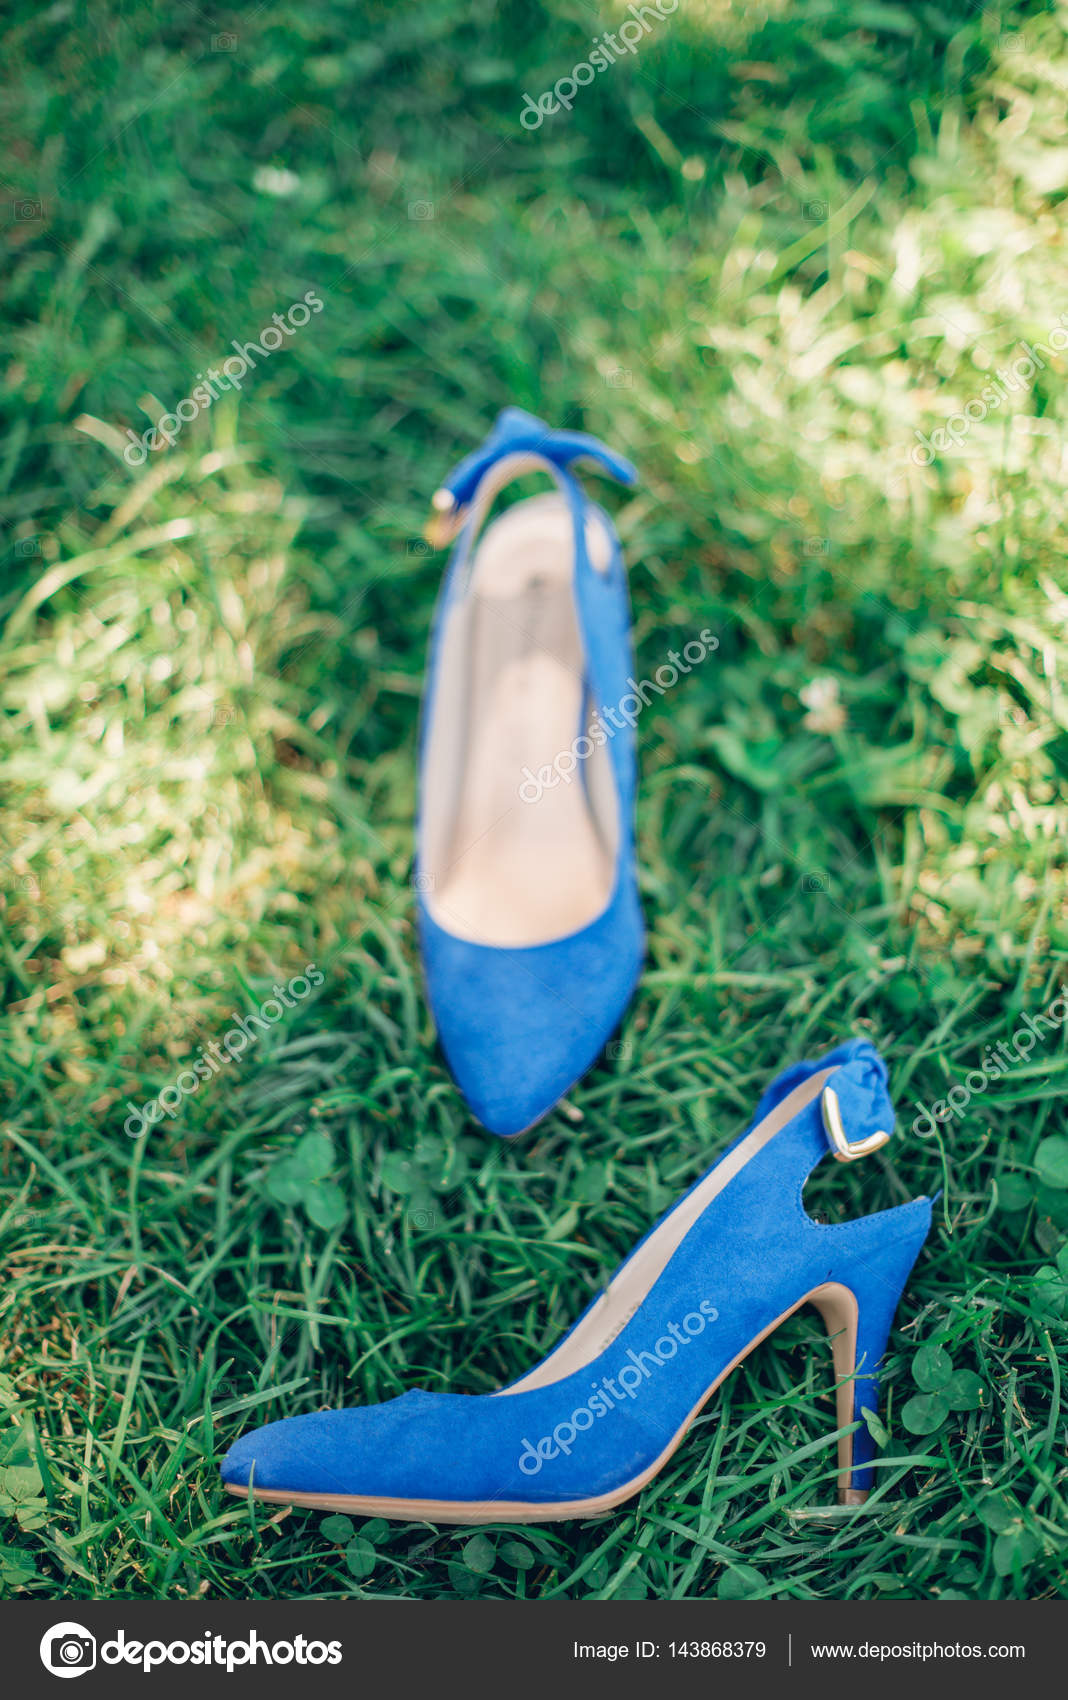 blue hill shoes